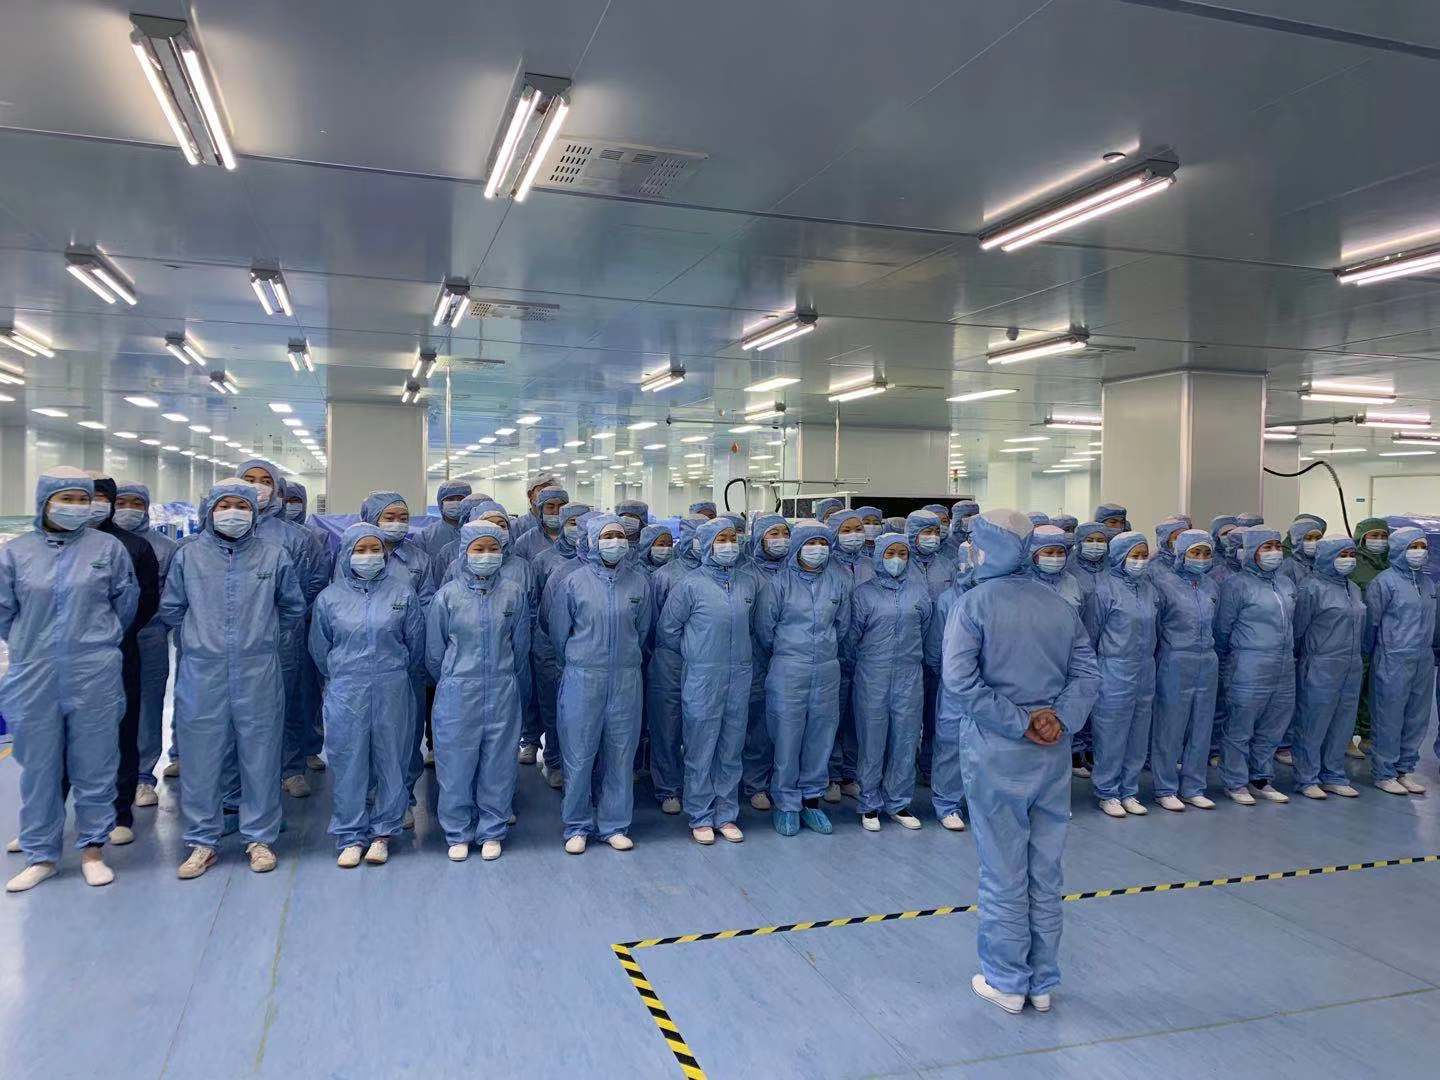 Comment l'usine de Winner Medical assure - t - elle la production pendant la période de coronavirus?